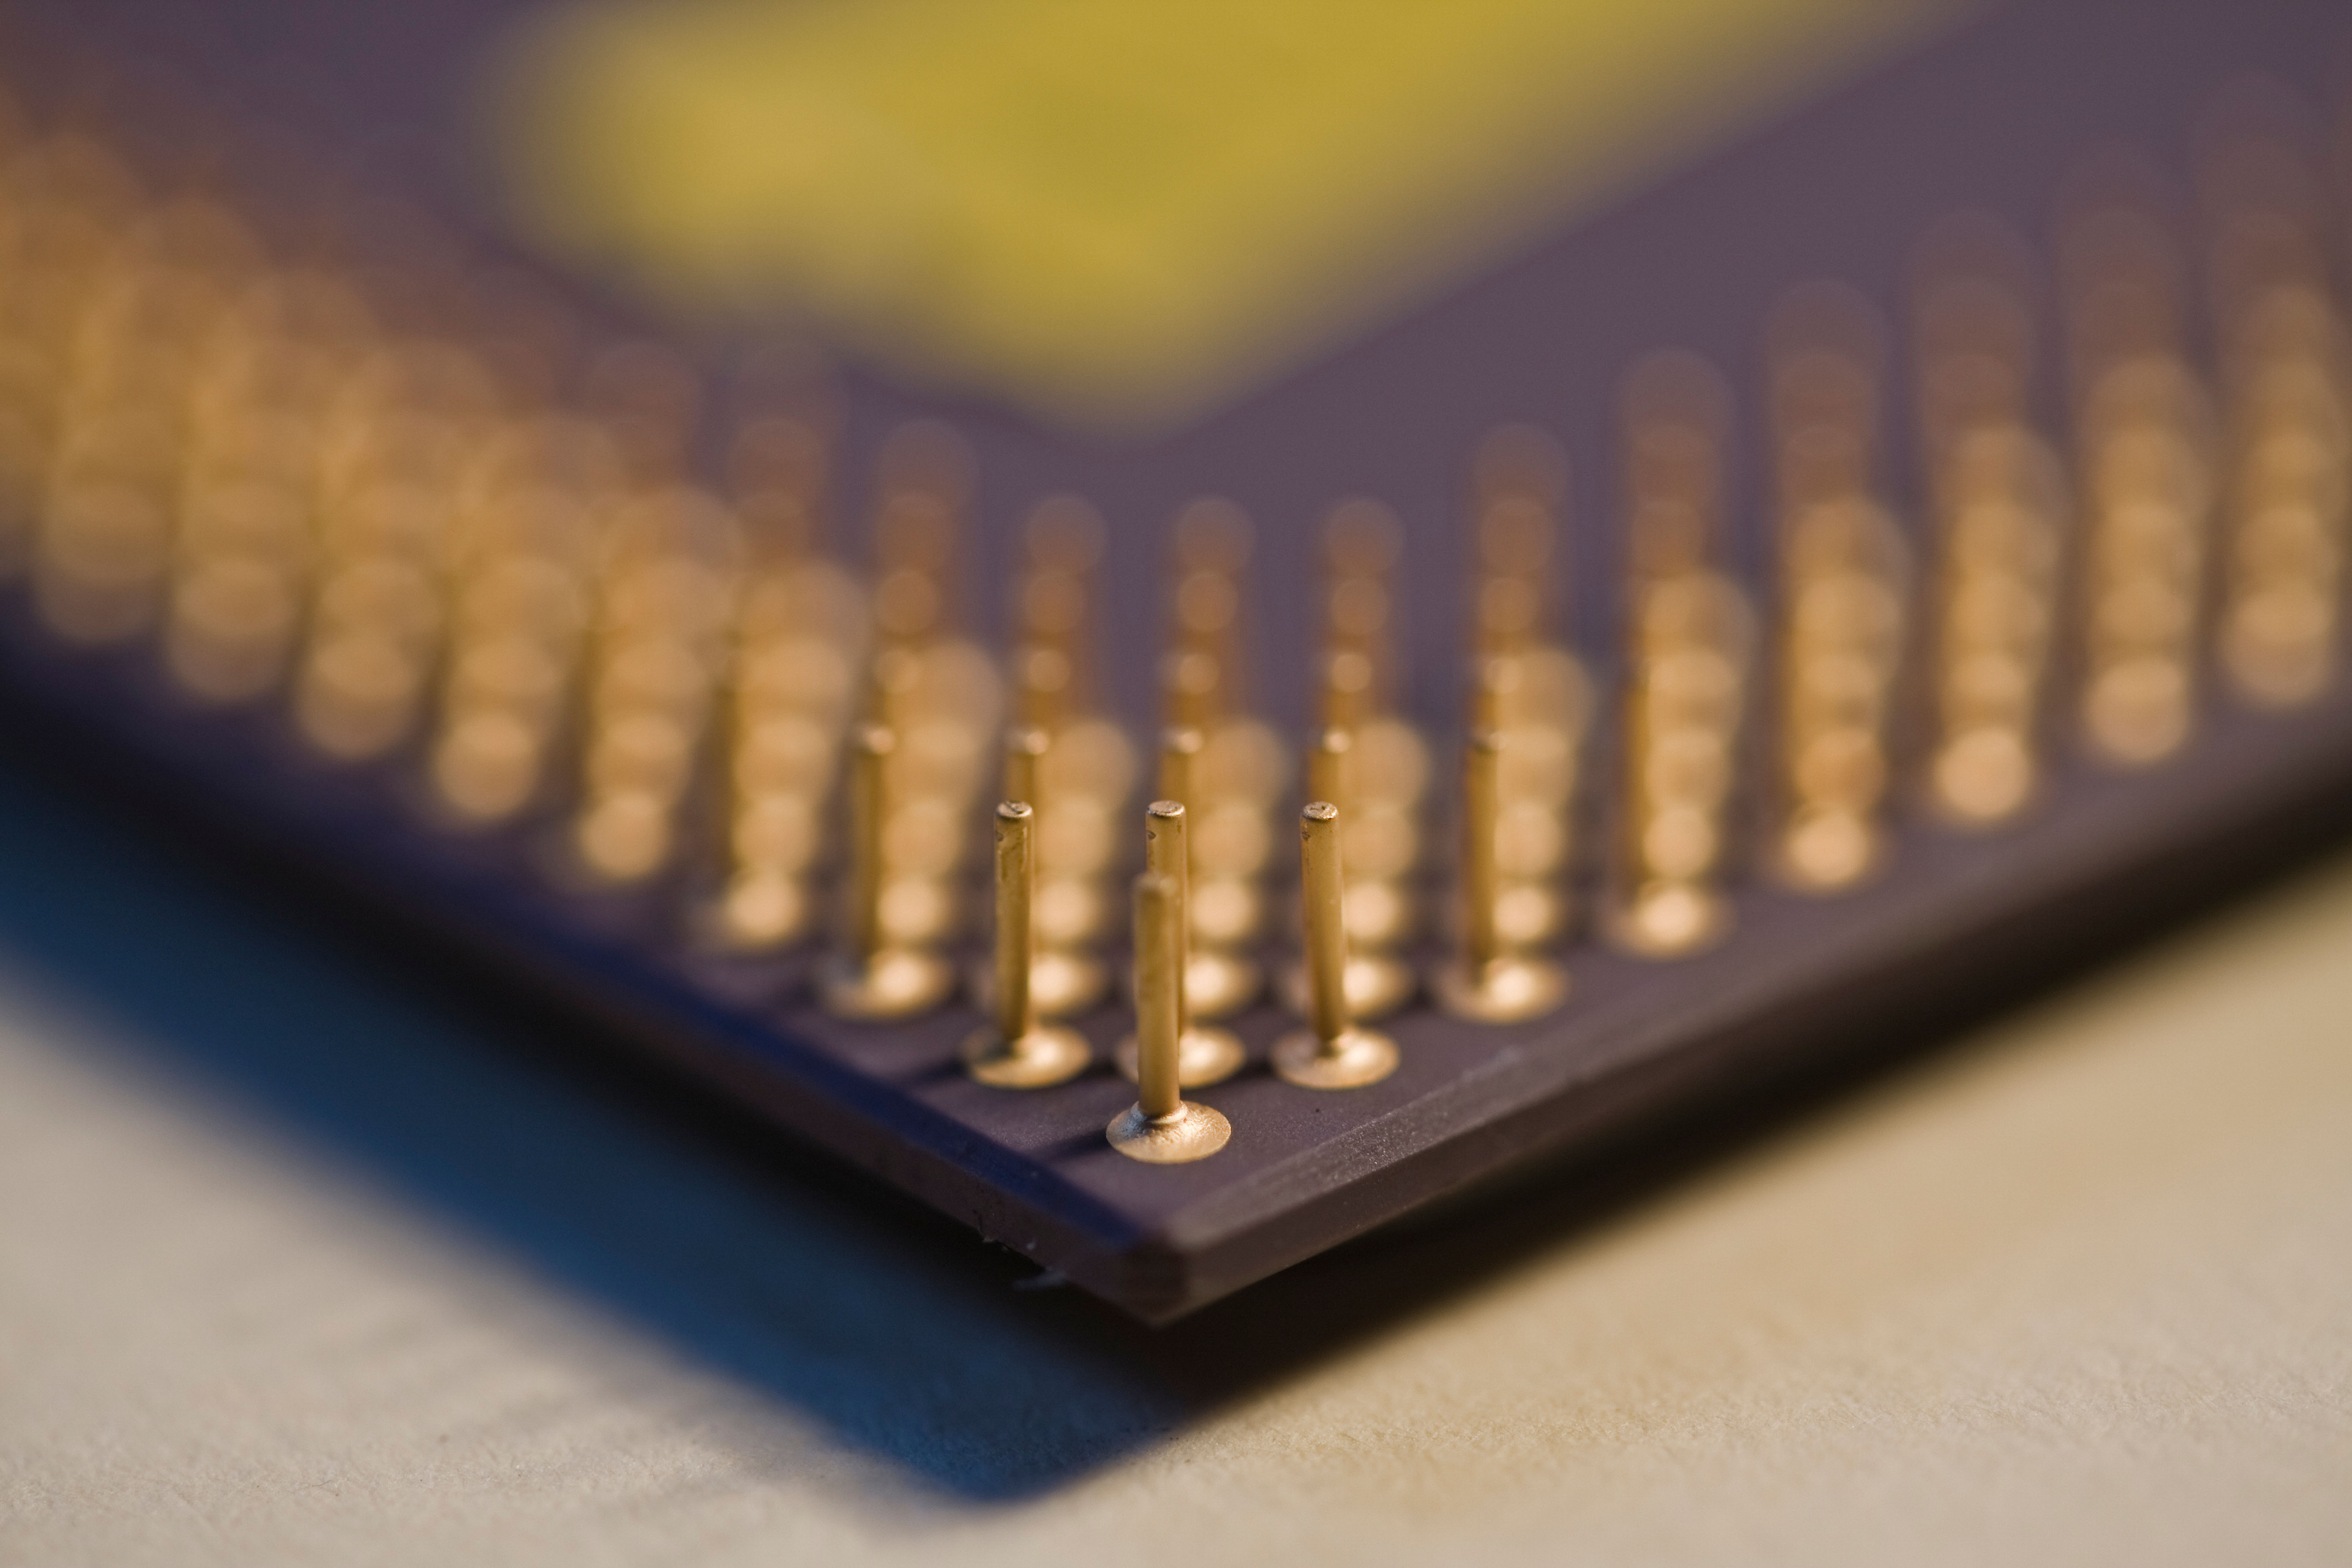 A computer chip